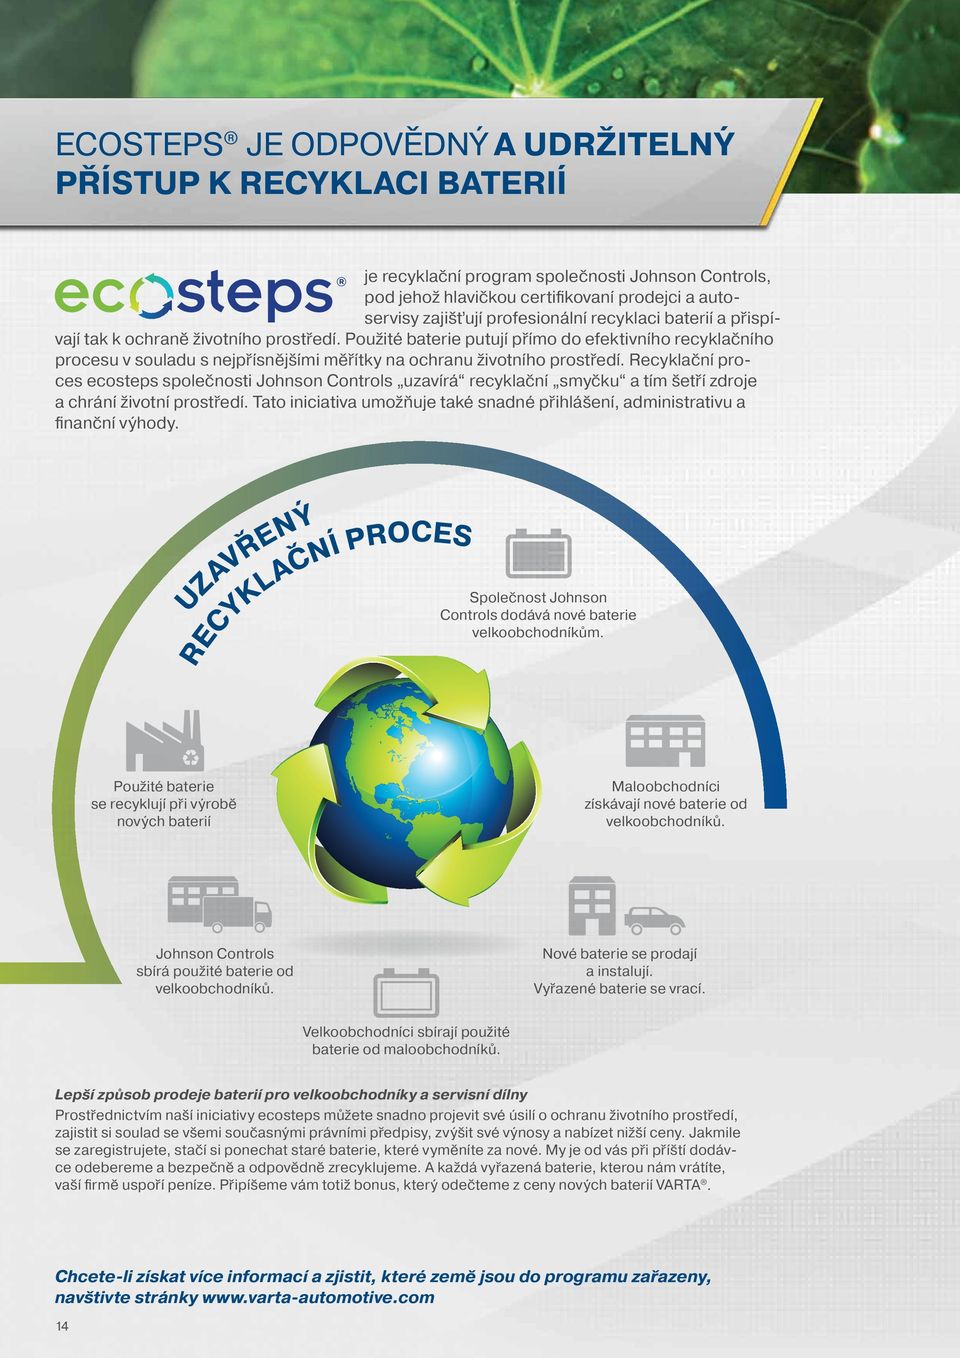 Recyklační proces ecosteps společnosti Johnson Controls uzavírá recyklační smyčku a tím šetří zdroje a chrání životní prostředí.